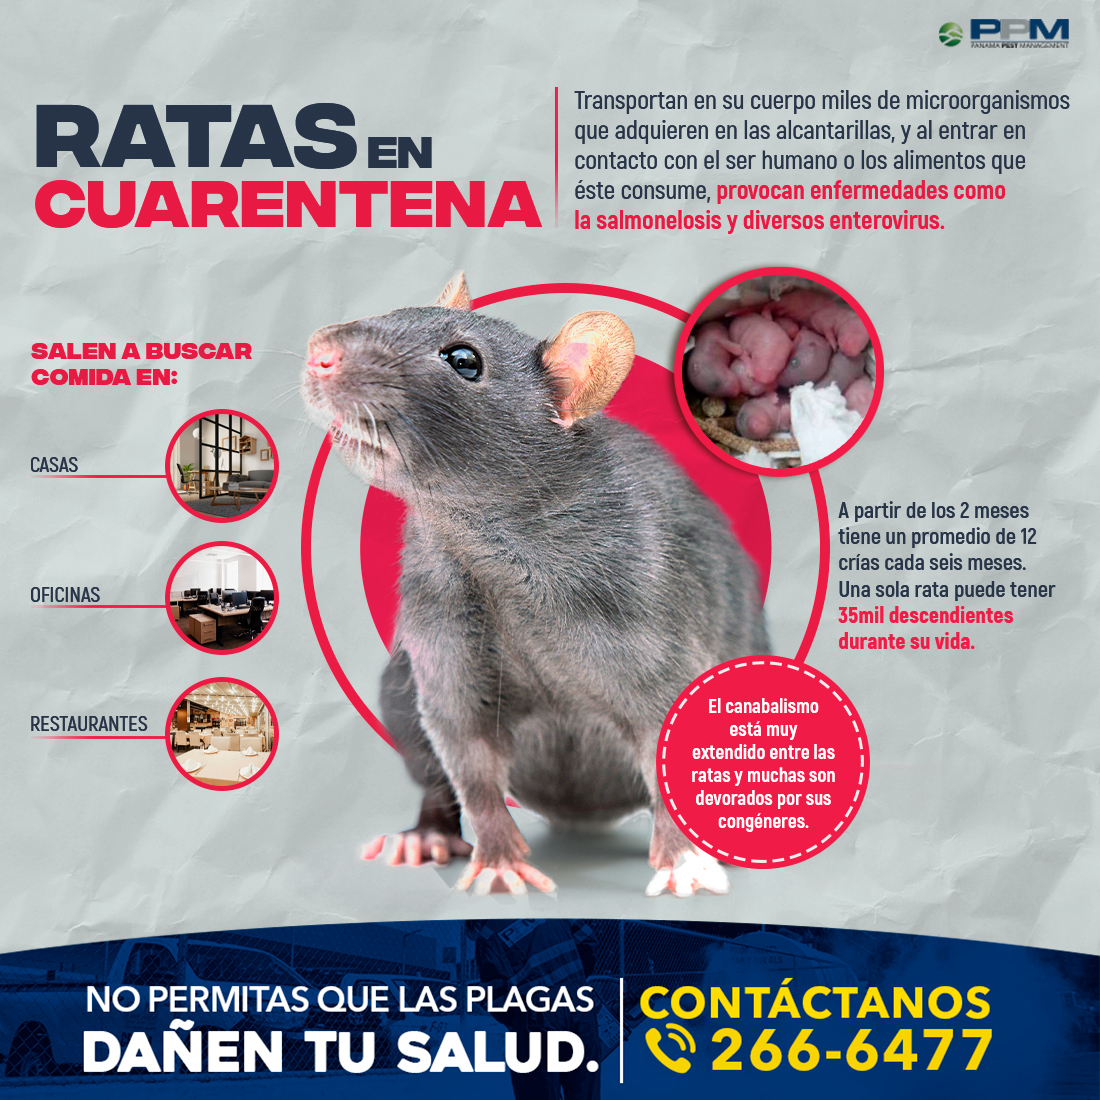 consenso fecha límite administración Somos EMG on Twitter: "Las ratas son animales con una gran capacidad de  reproducción, por lo tanto, es común que proliferen con facilidad en los  lugares donde se establecen. En #PPM te